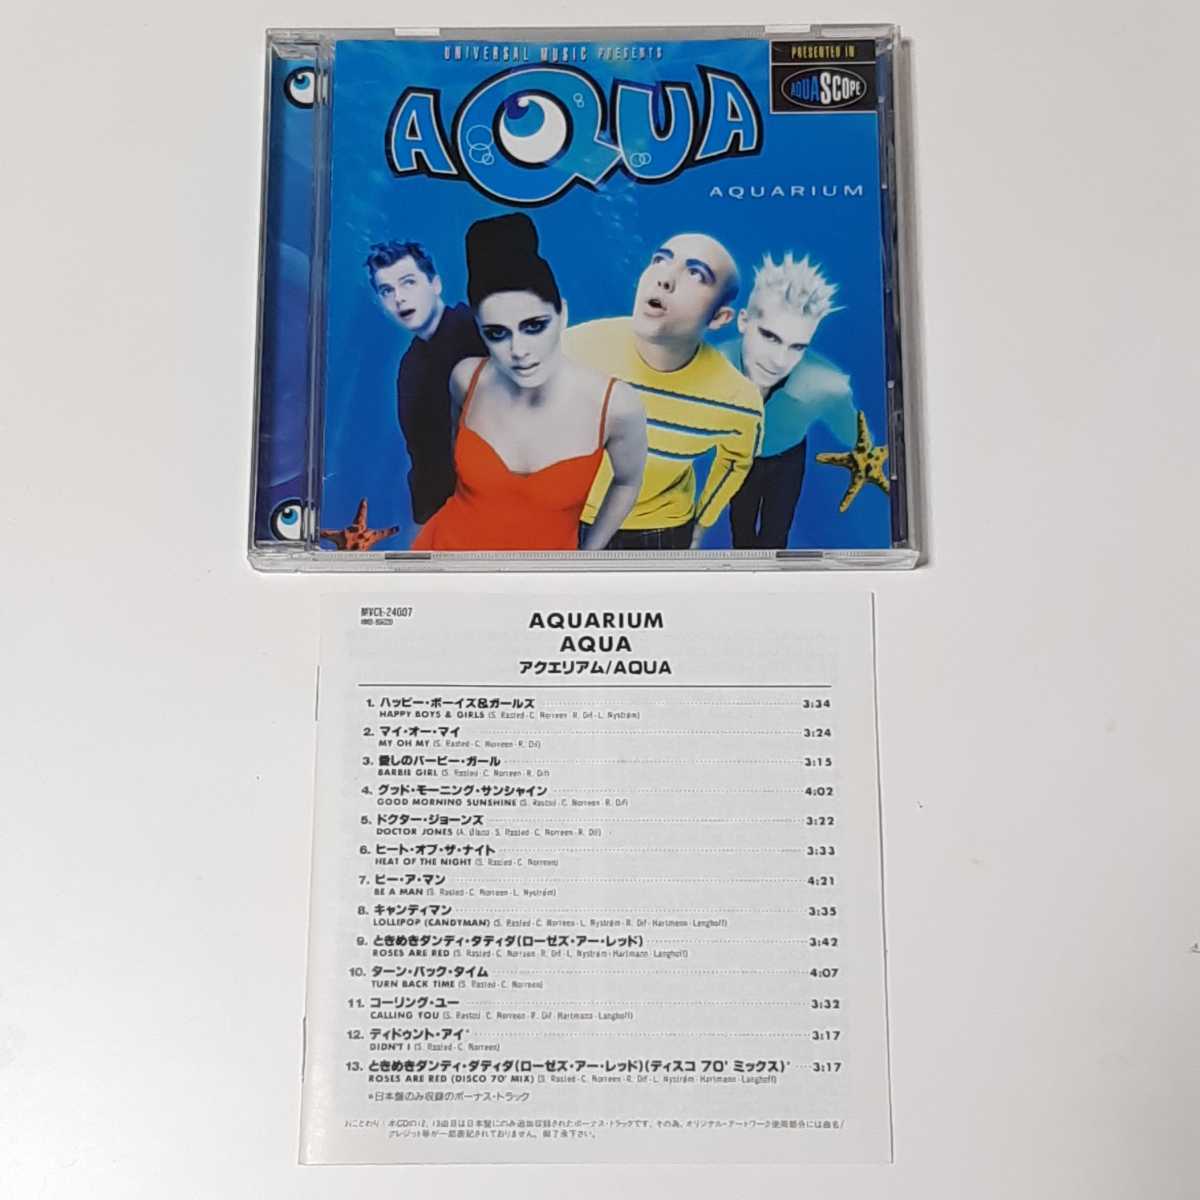 Aqua Aqua Aquavium Aquarium Antydic Edition японское описание текст бонус трек CD Альбом Barbie Girl Barbie Girl